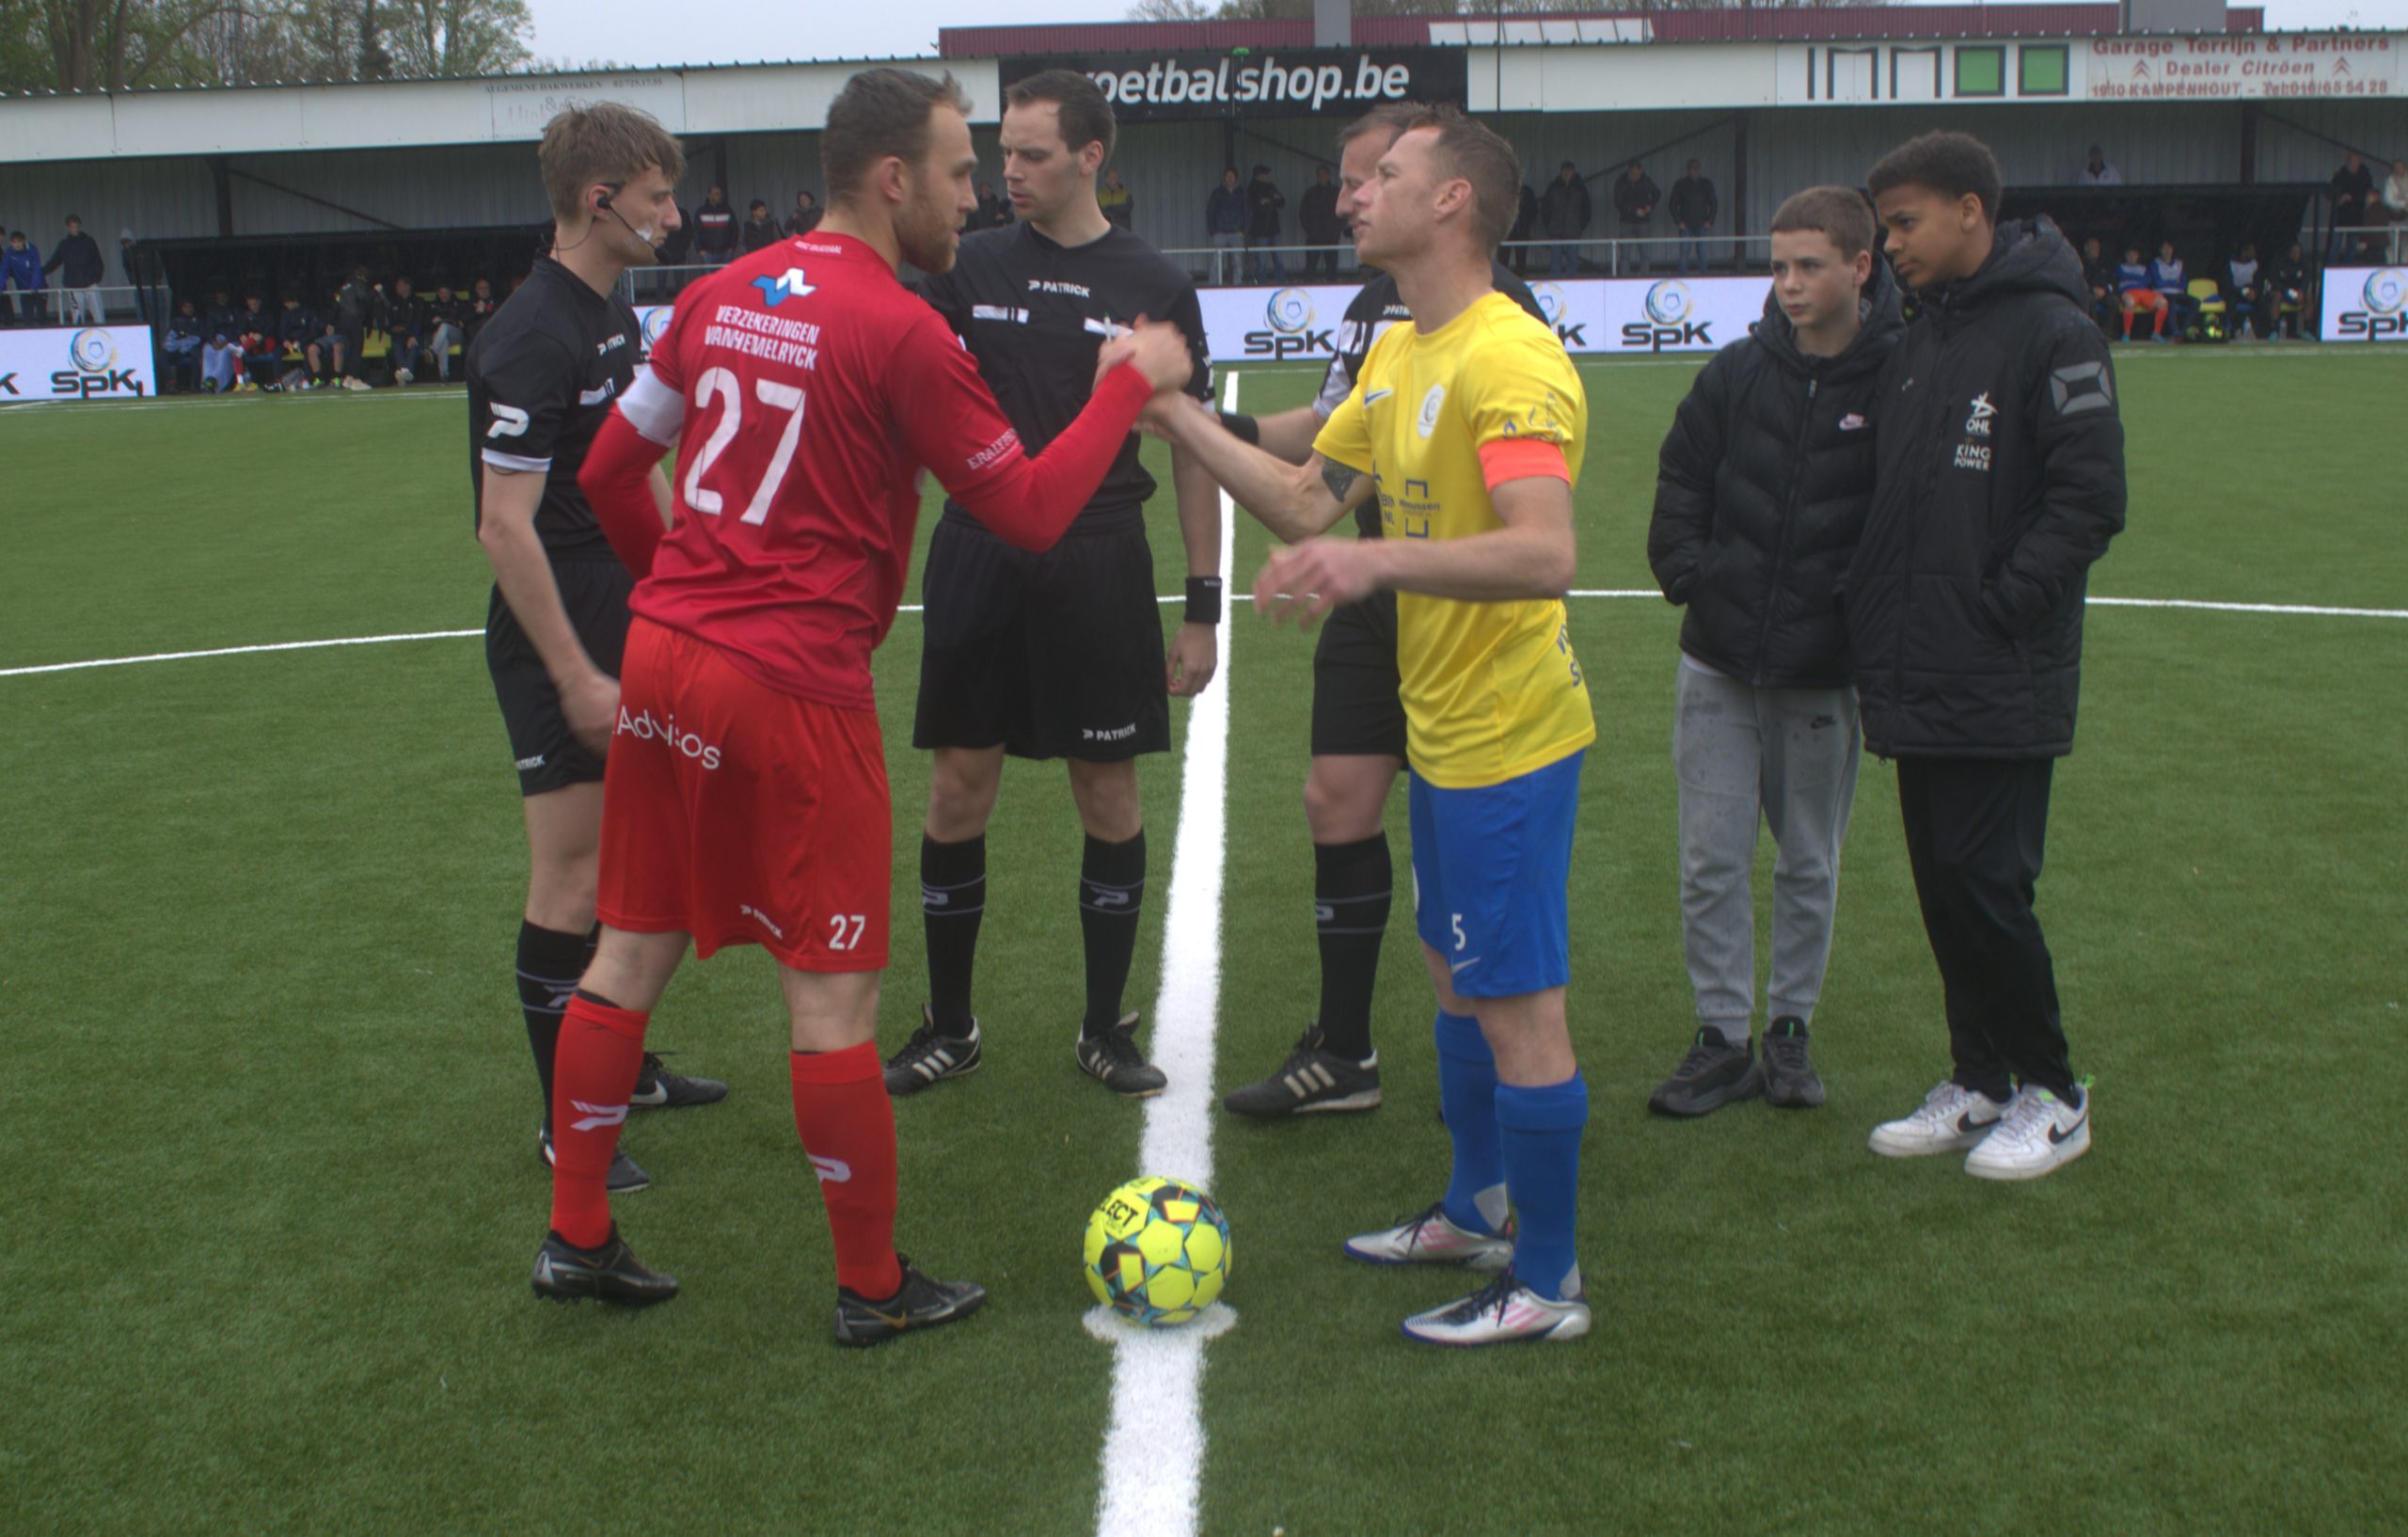 Nik Vangrunderbeek keert terug naar Sporting Kampenhout